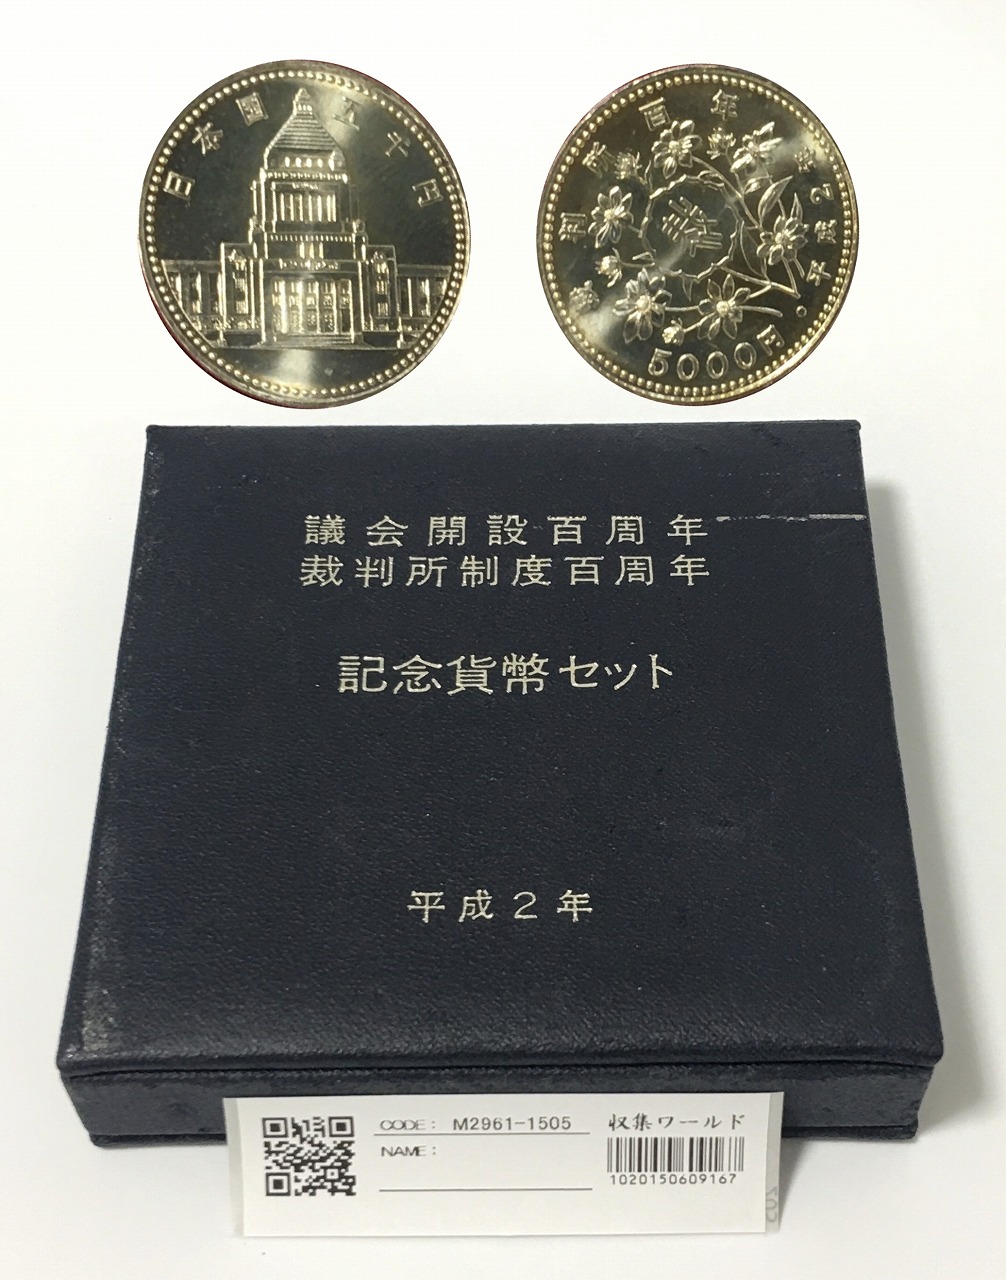 議会開設100周年記念 5000円銀貨の出品です。 - 貨幣